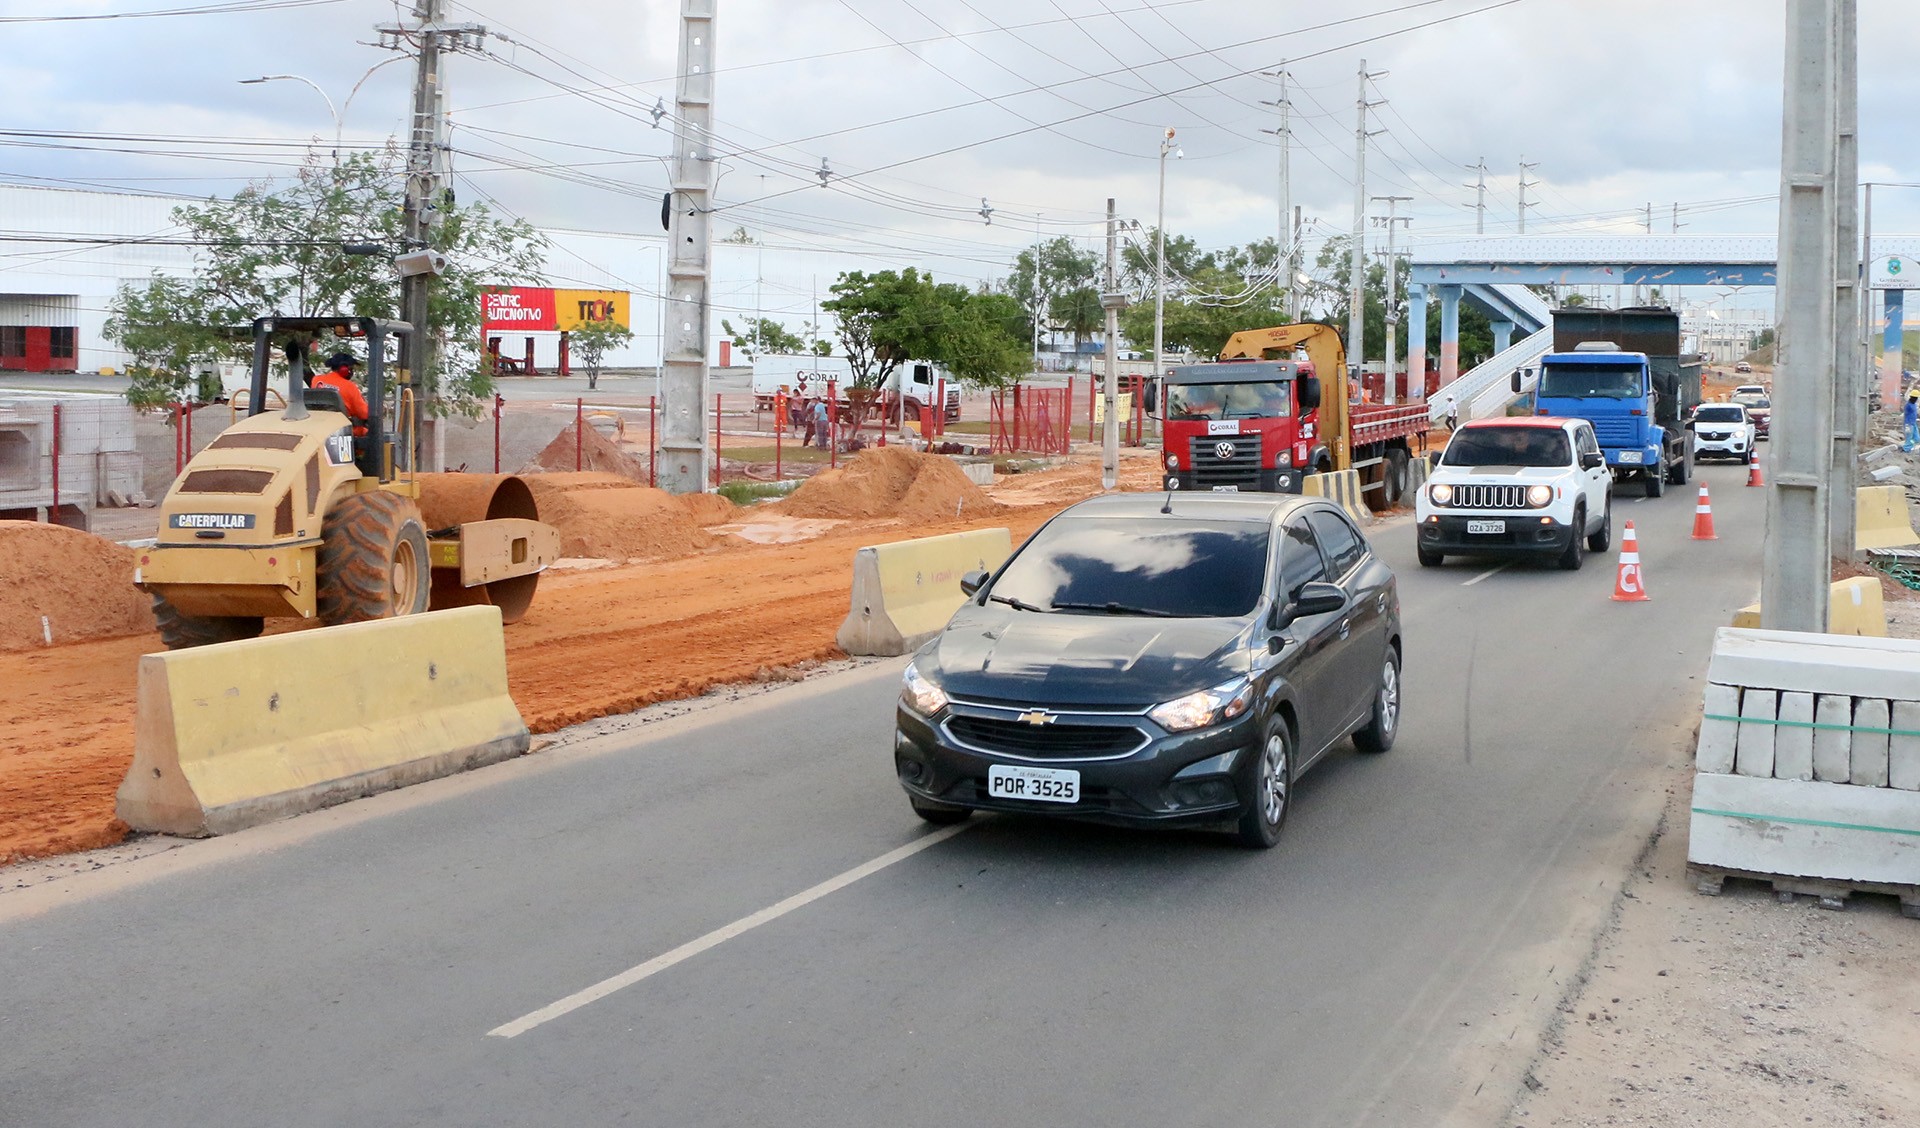 Fóruns Territoriais de Fortaleza - Fórun Territorial Aeroporto, Parreão e Vila União - Viaduto da Avenida Alberto Craveiro é bloqueado para viabilizar obras de duplicação e requalificação viária